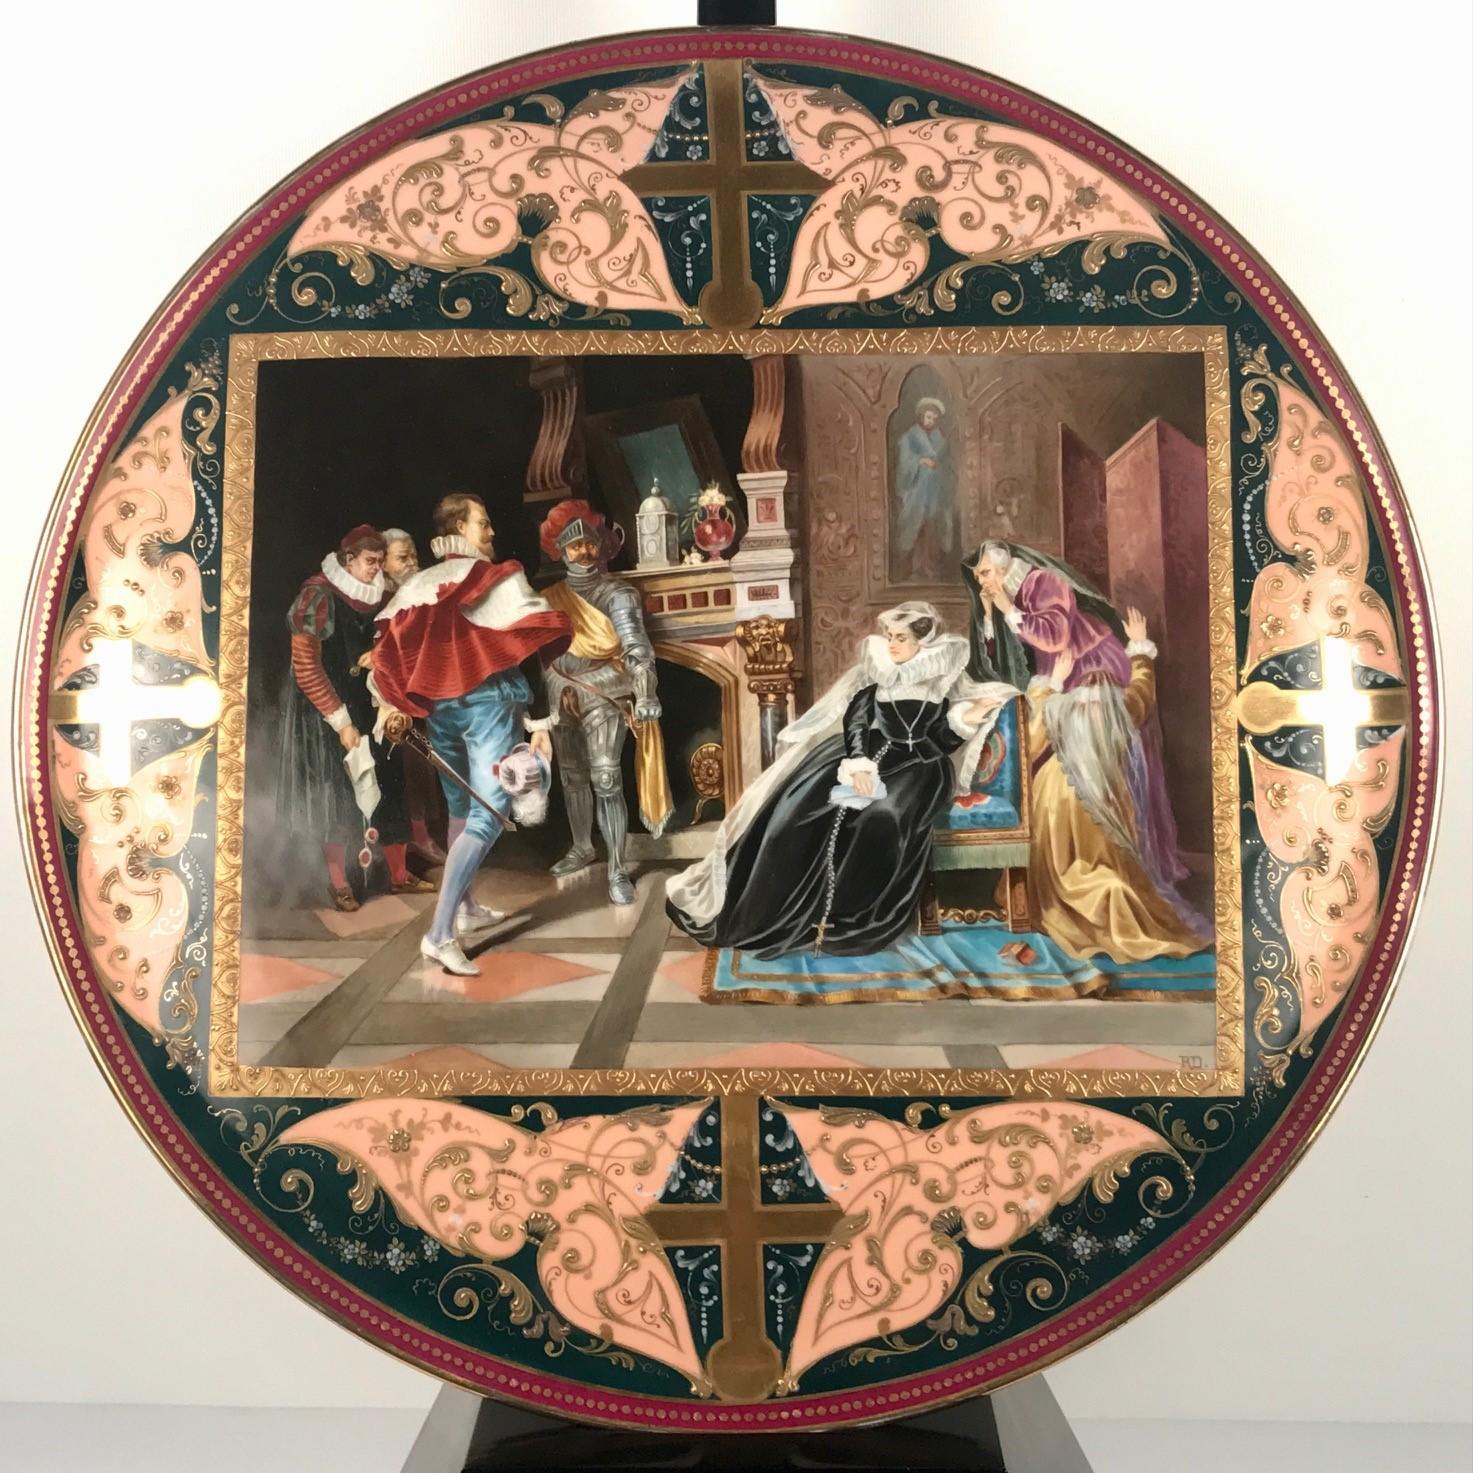 Chargeur circulaire en porcelaine de Vienne, peint à la main, représentant Marie, reine d'Écosse, à qui l'on annonce son exécution imminente, dans un cadre rectangulaire perlé et doré, sur fond vert foncé, avec des motifs feuillus et floraux sous et